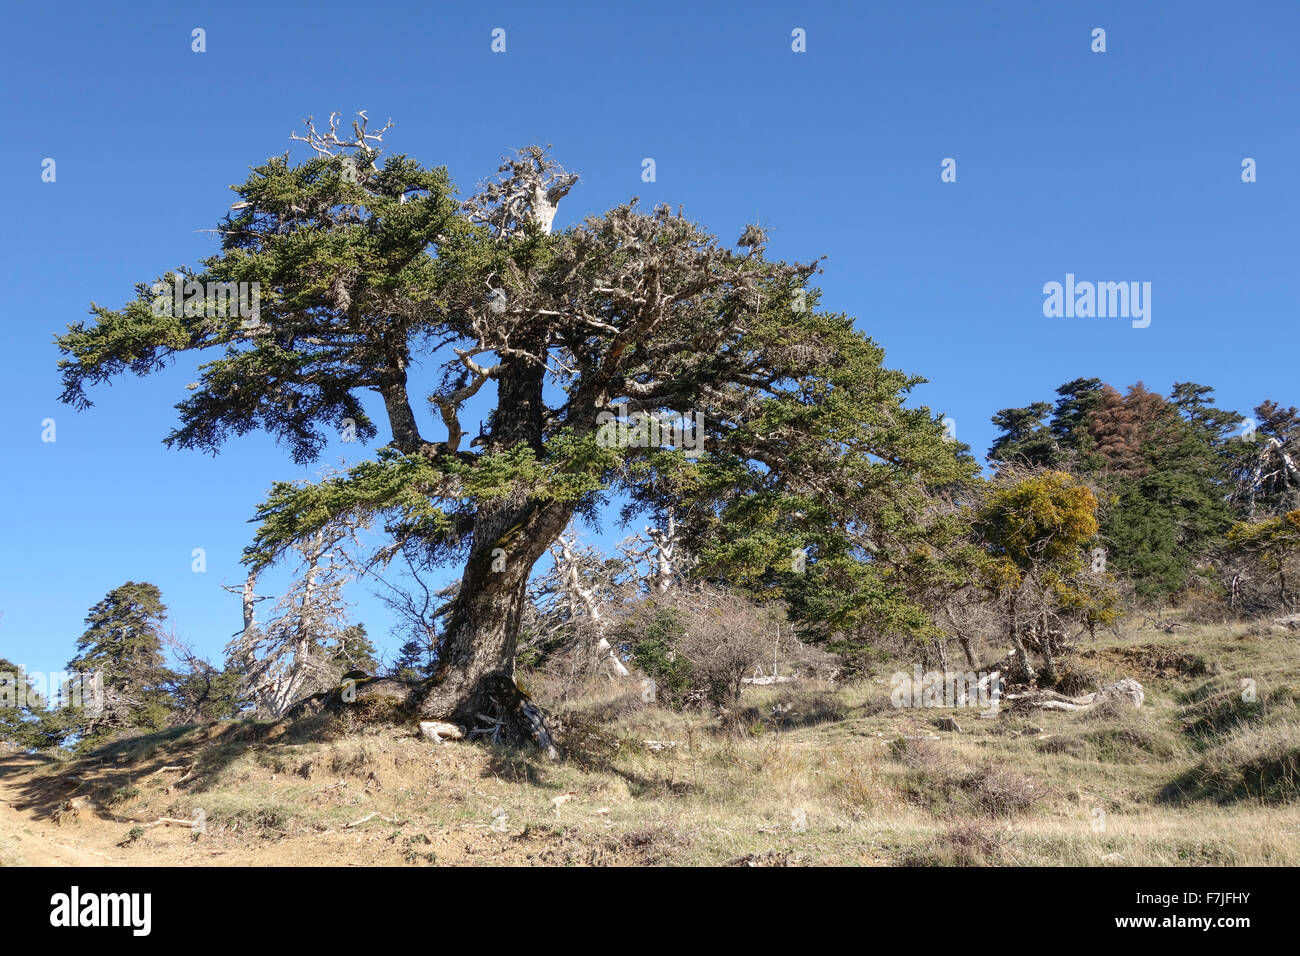 Spanish fir, Abies pinsapo in natural park Sierra de las Nieves , Andalusia, Spain. Stock Photo